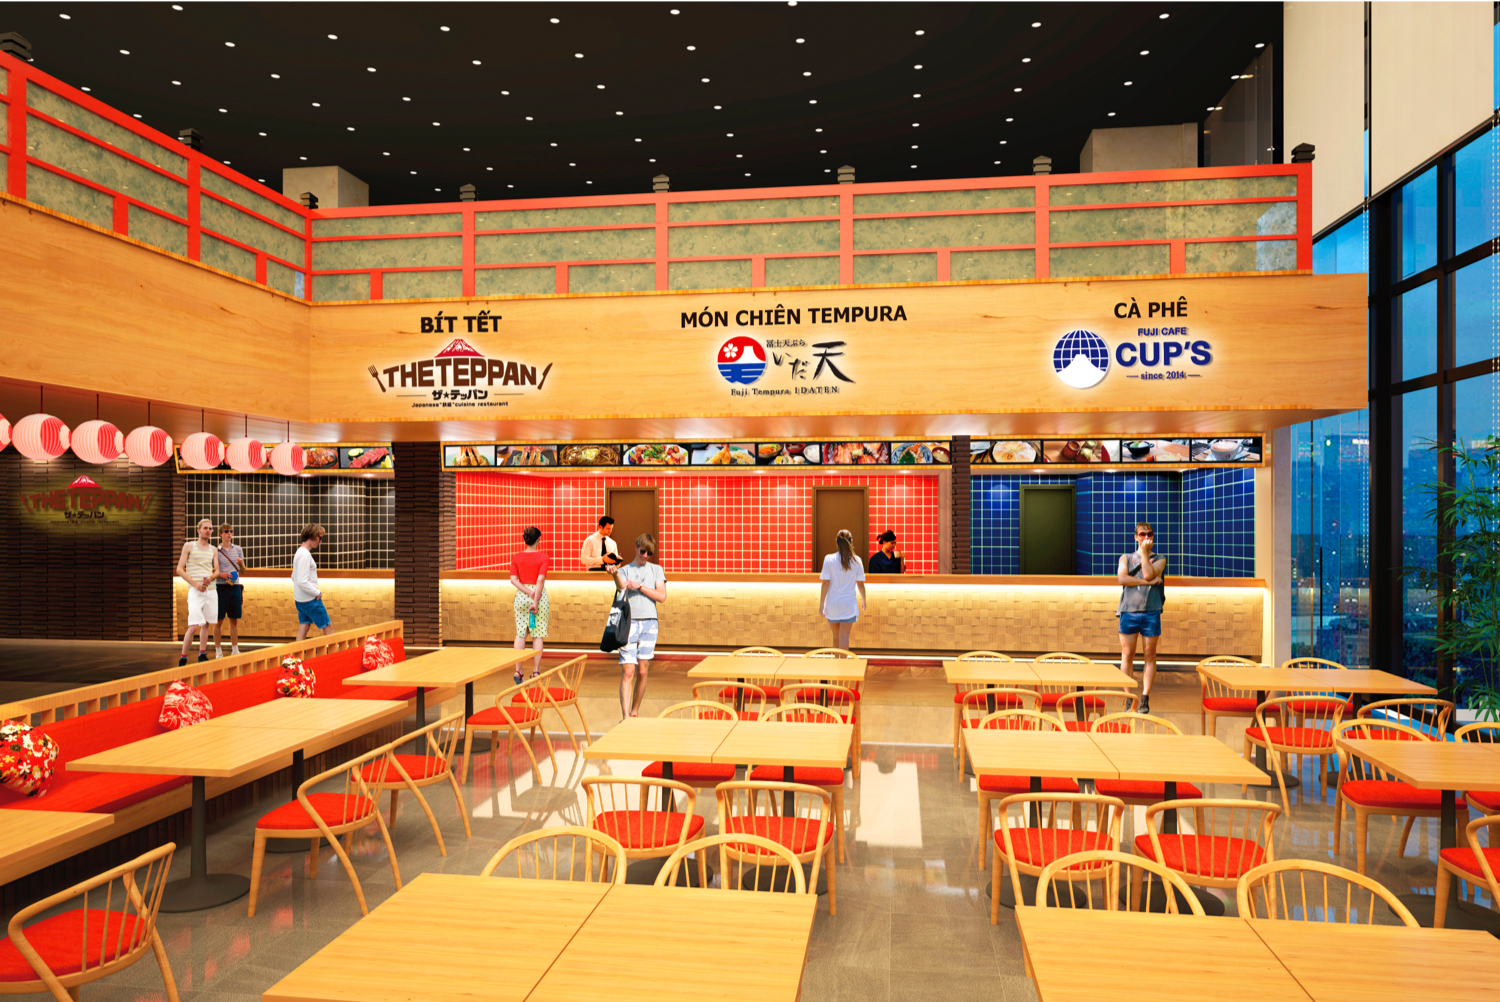 2020年11月ベトナム初の温泉＆アクアドーム施設
DaNang三日月スパリゾート内に
冨士天ぷら いだ天、The Teppan、FUJI CAFE CUP’Sの
3店舗が同時新オープン！